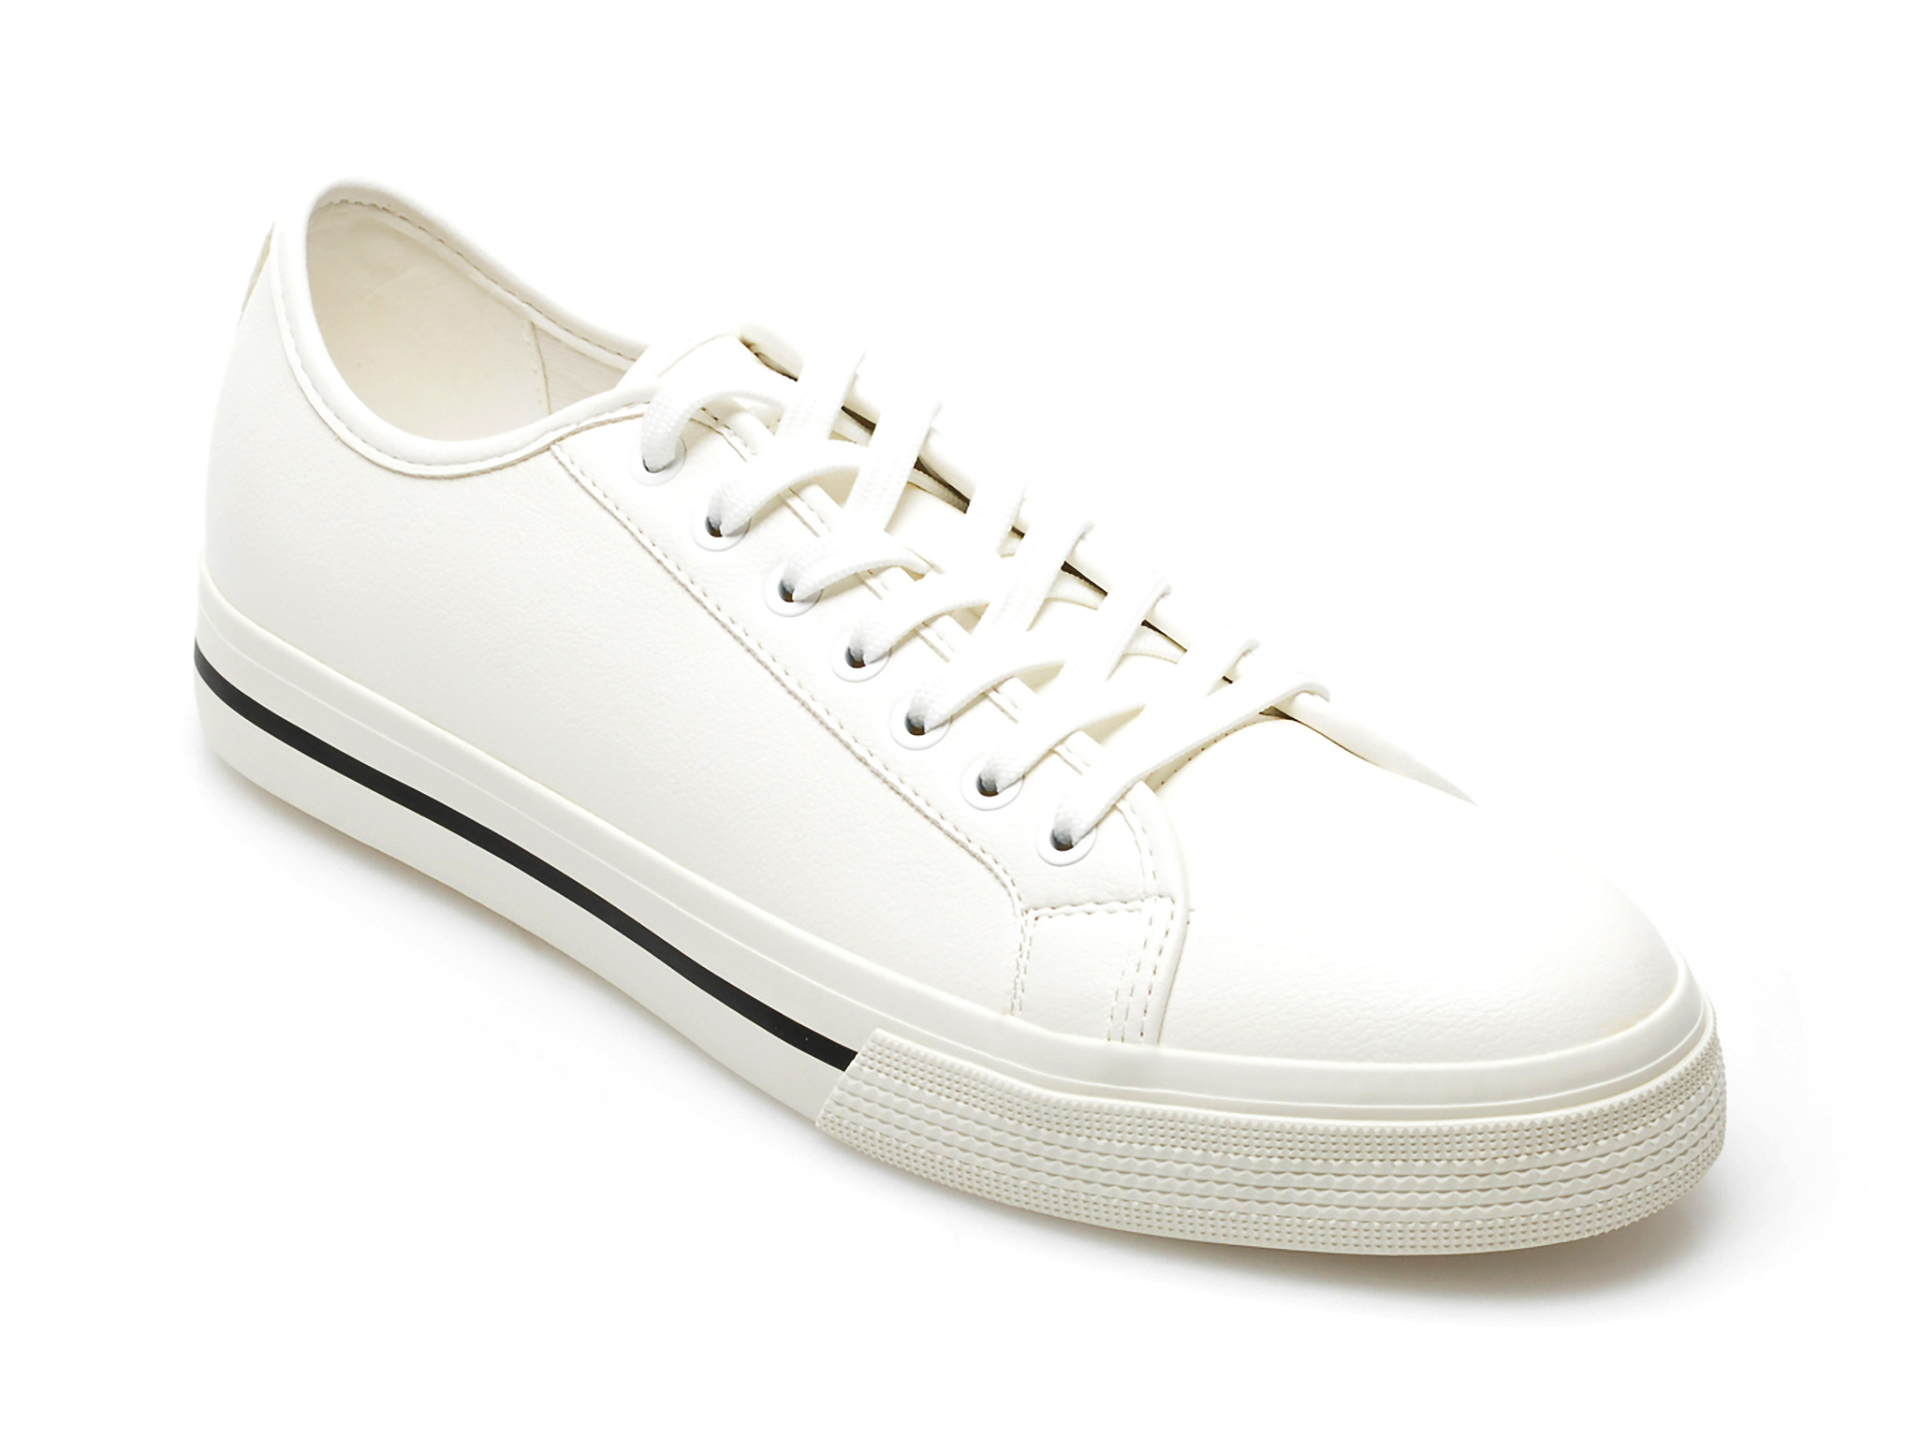 Pantofi ALDO albi, STROLLEN100, din piele ecologica Aldo